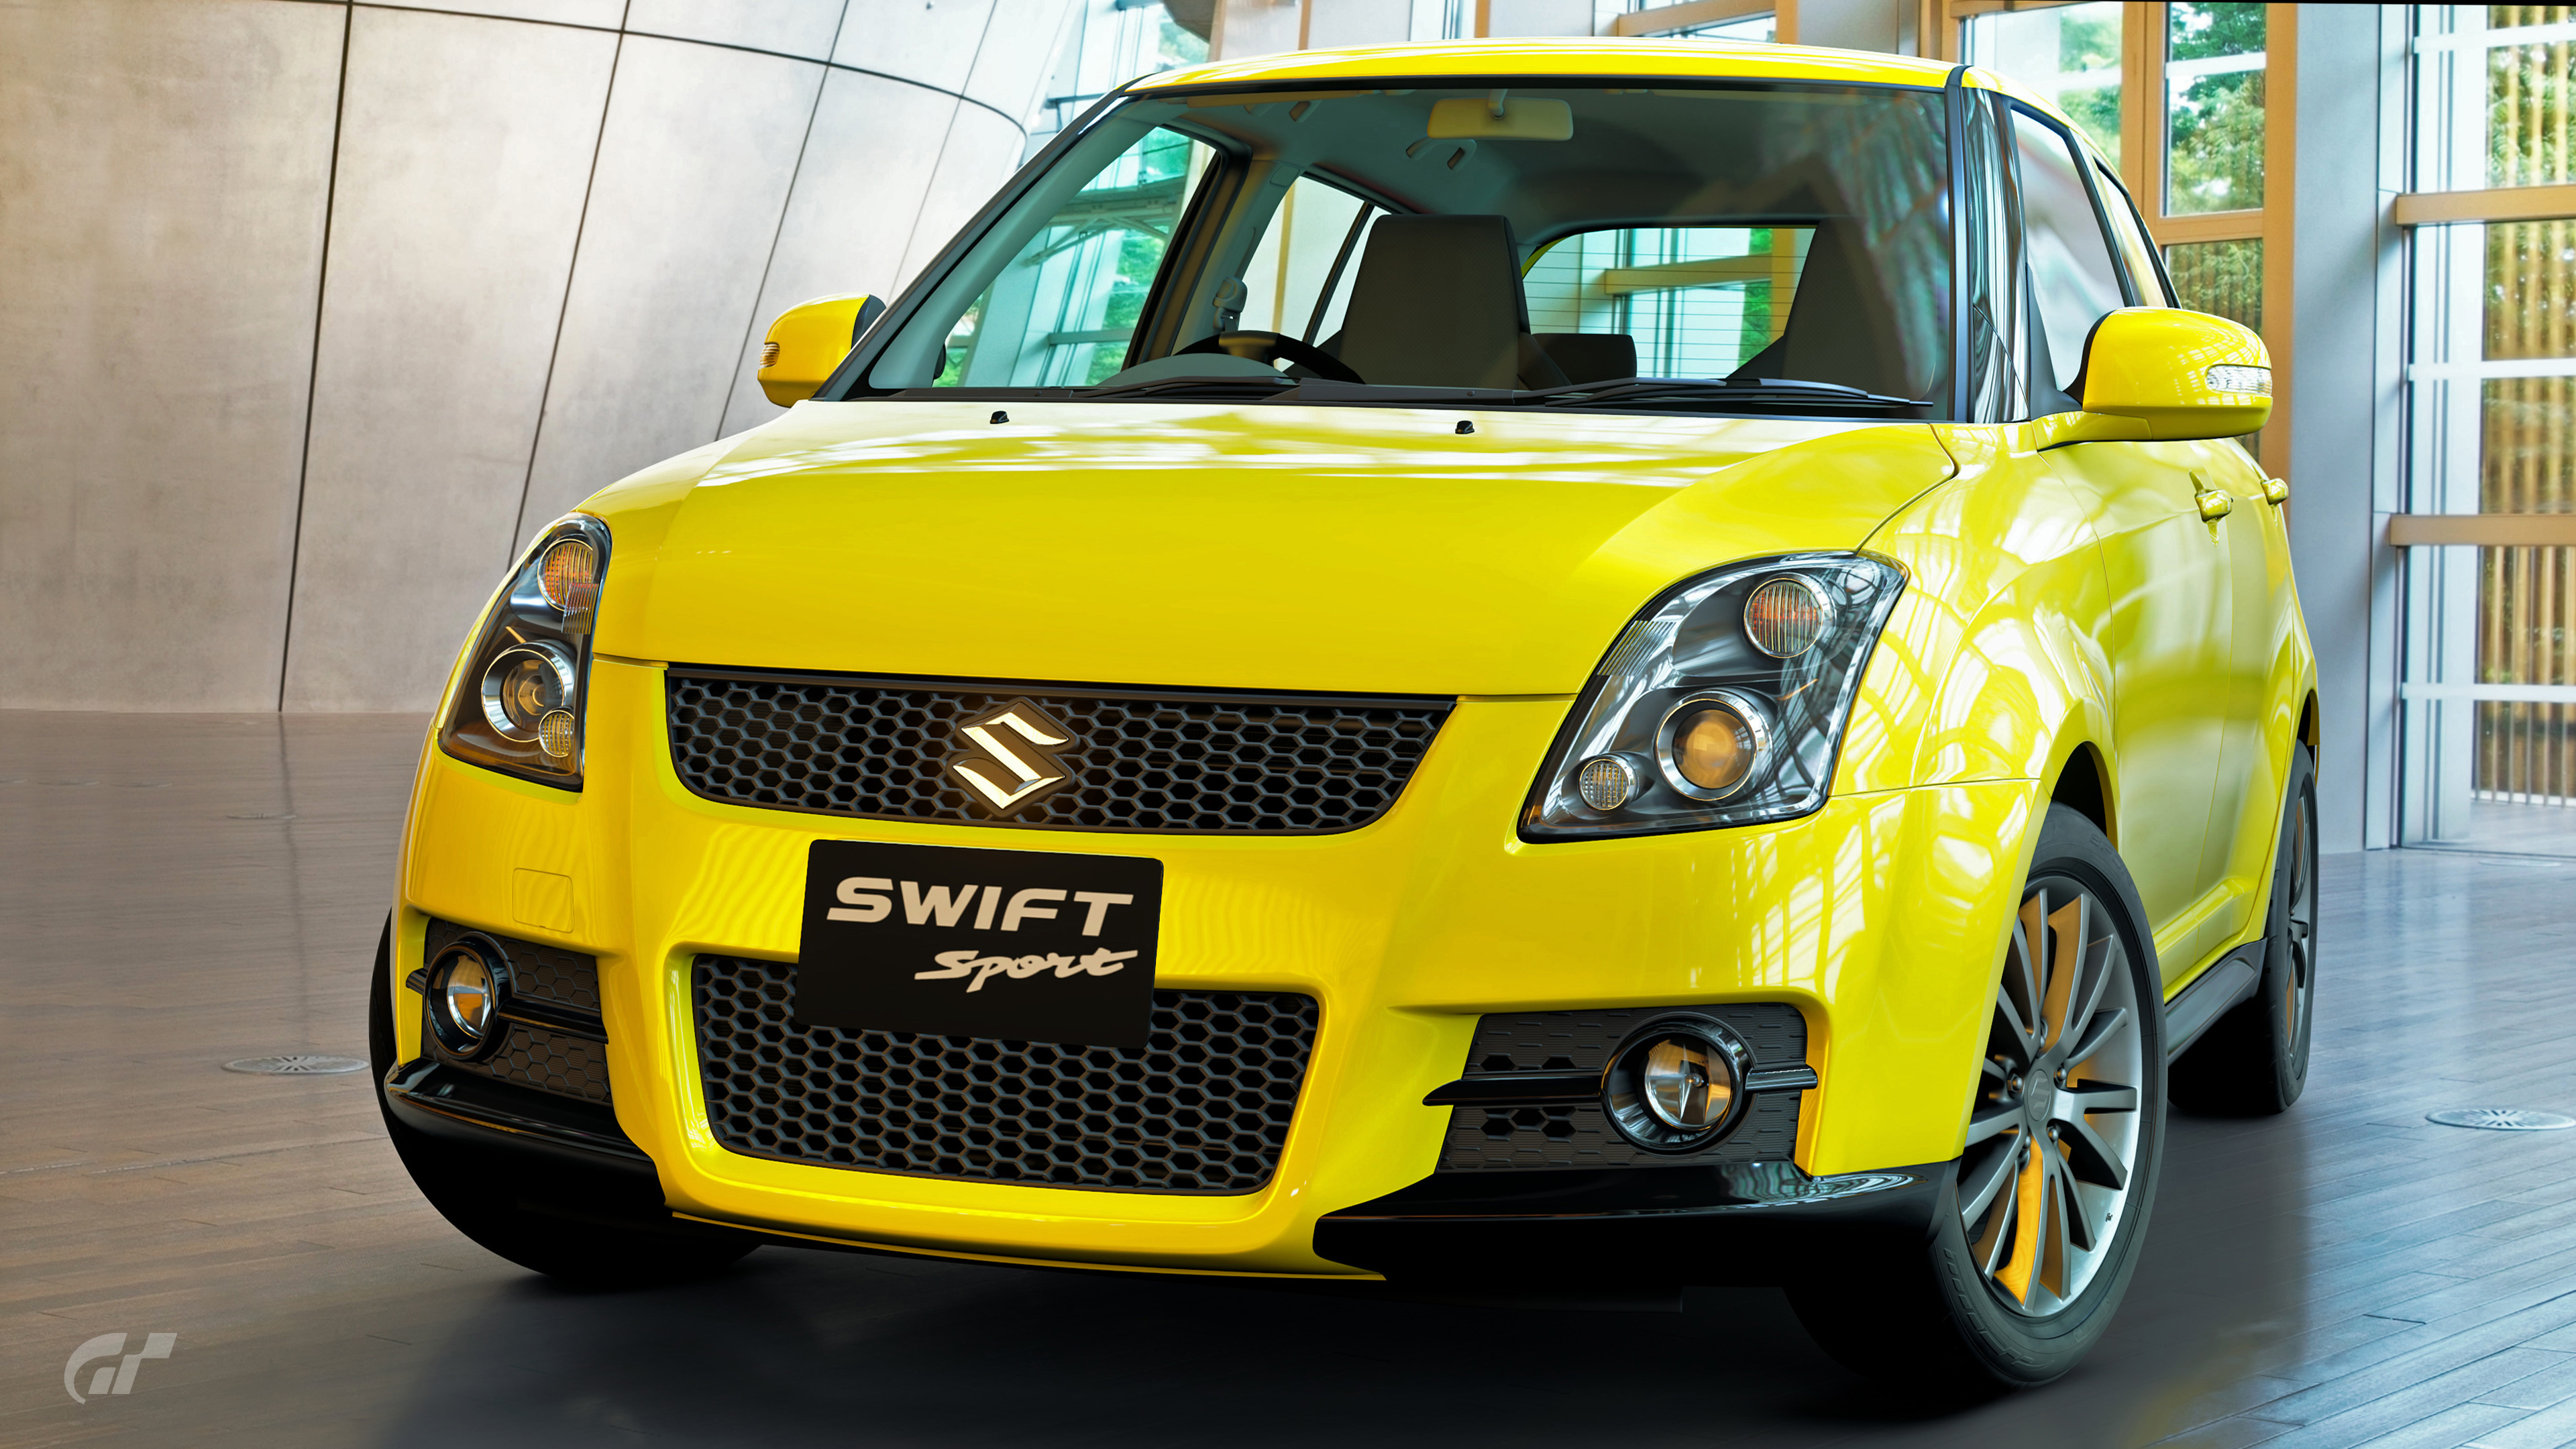 Suzuki Swift, Sporty hatchback, Suzuki Swift Sport, Automotive adventure, 3840x2160 4K Desktop